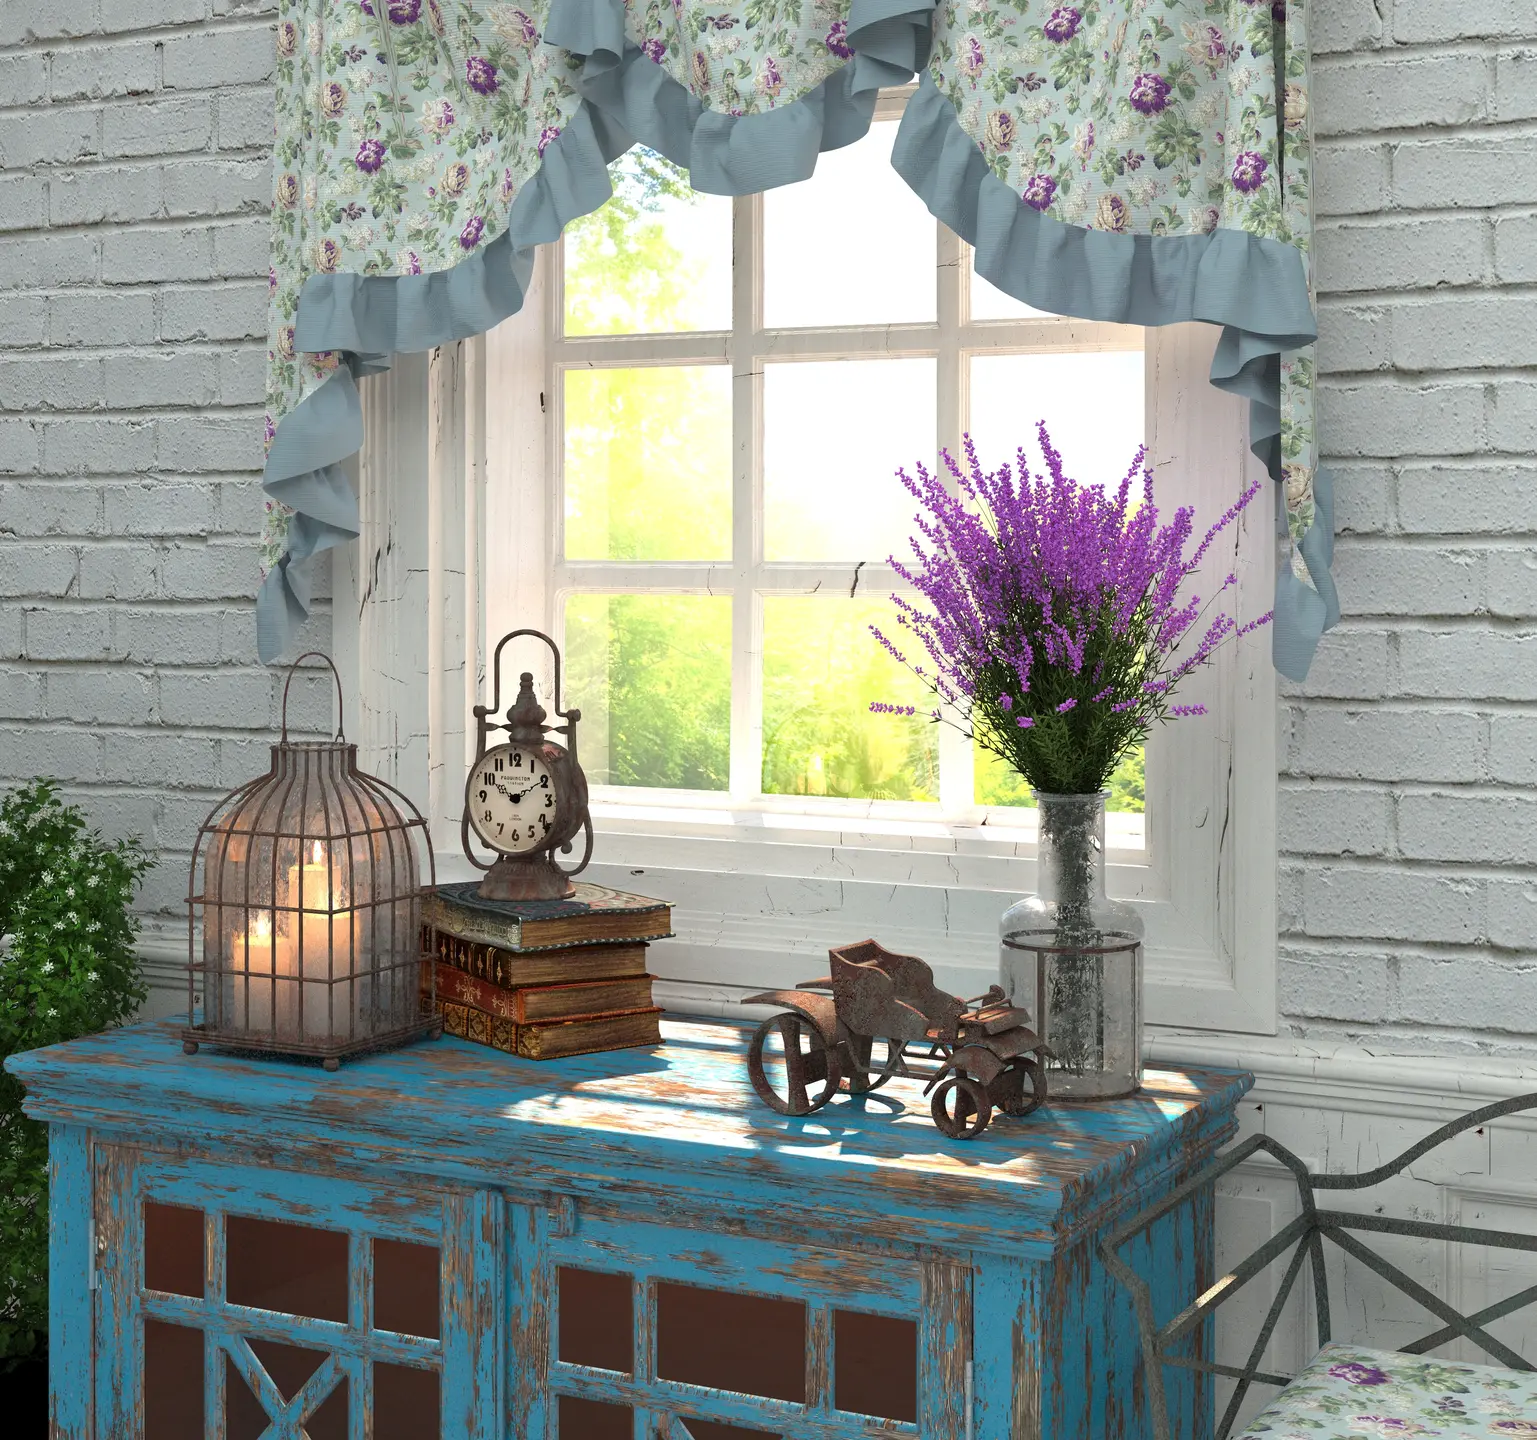 Jadalnia w kolorze niebieskim z oknem w stylu prowansalskim, styl prowansalski. Element charakterystyczny: okno w stylu prowansalskim